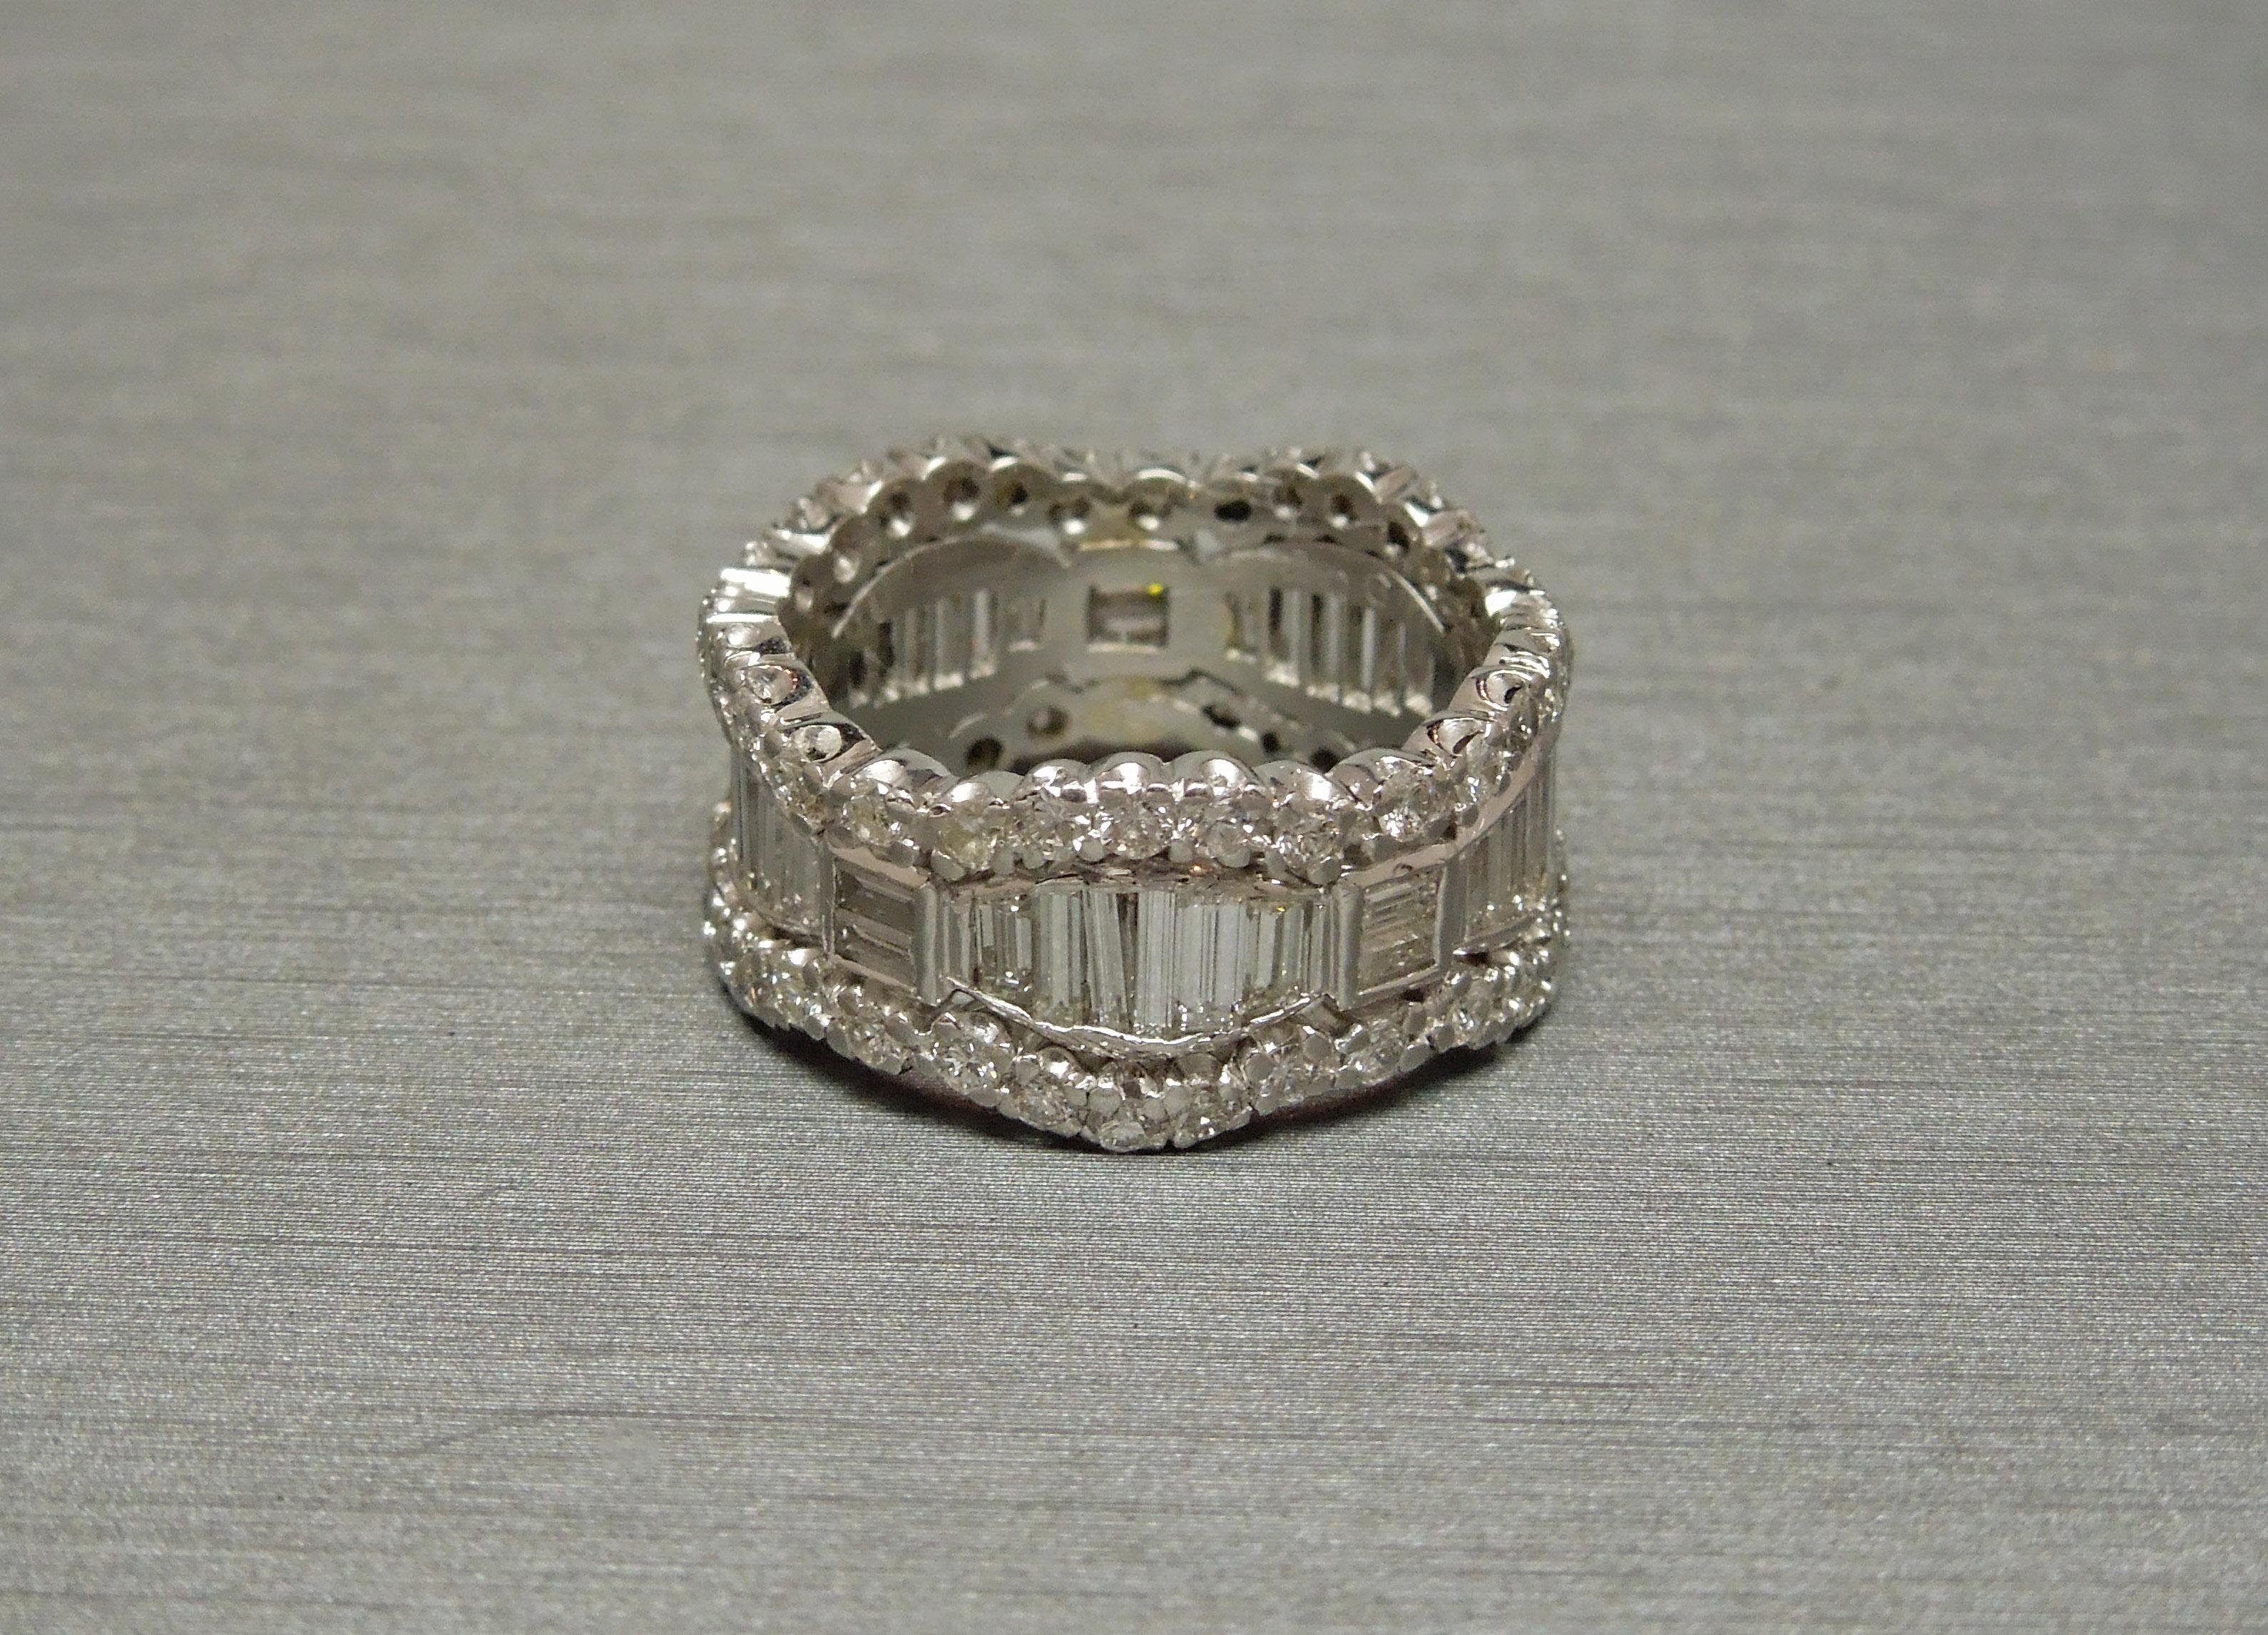 Ce bracelet d'éternité à trois rangs de diamants du milieu du siècle a été conçu selon un modèle inspiré de Tiara - la couronne étant un symbole de loyauté et d'amour en plus du design d'éternité, symbolisant l'amour éternel.
Contenant une rangée